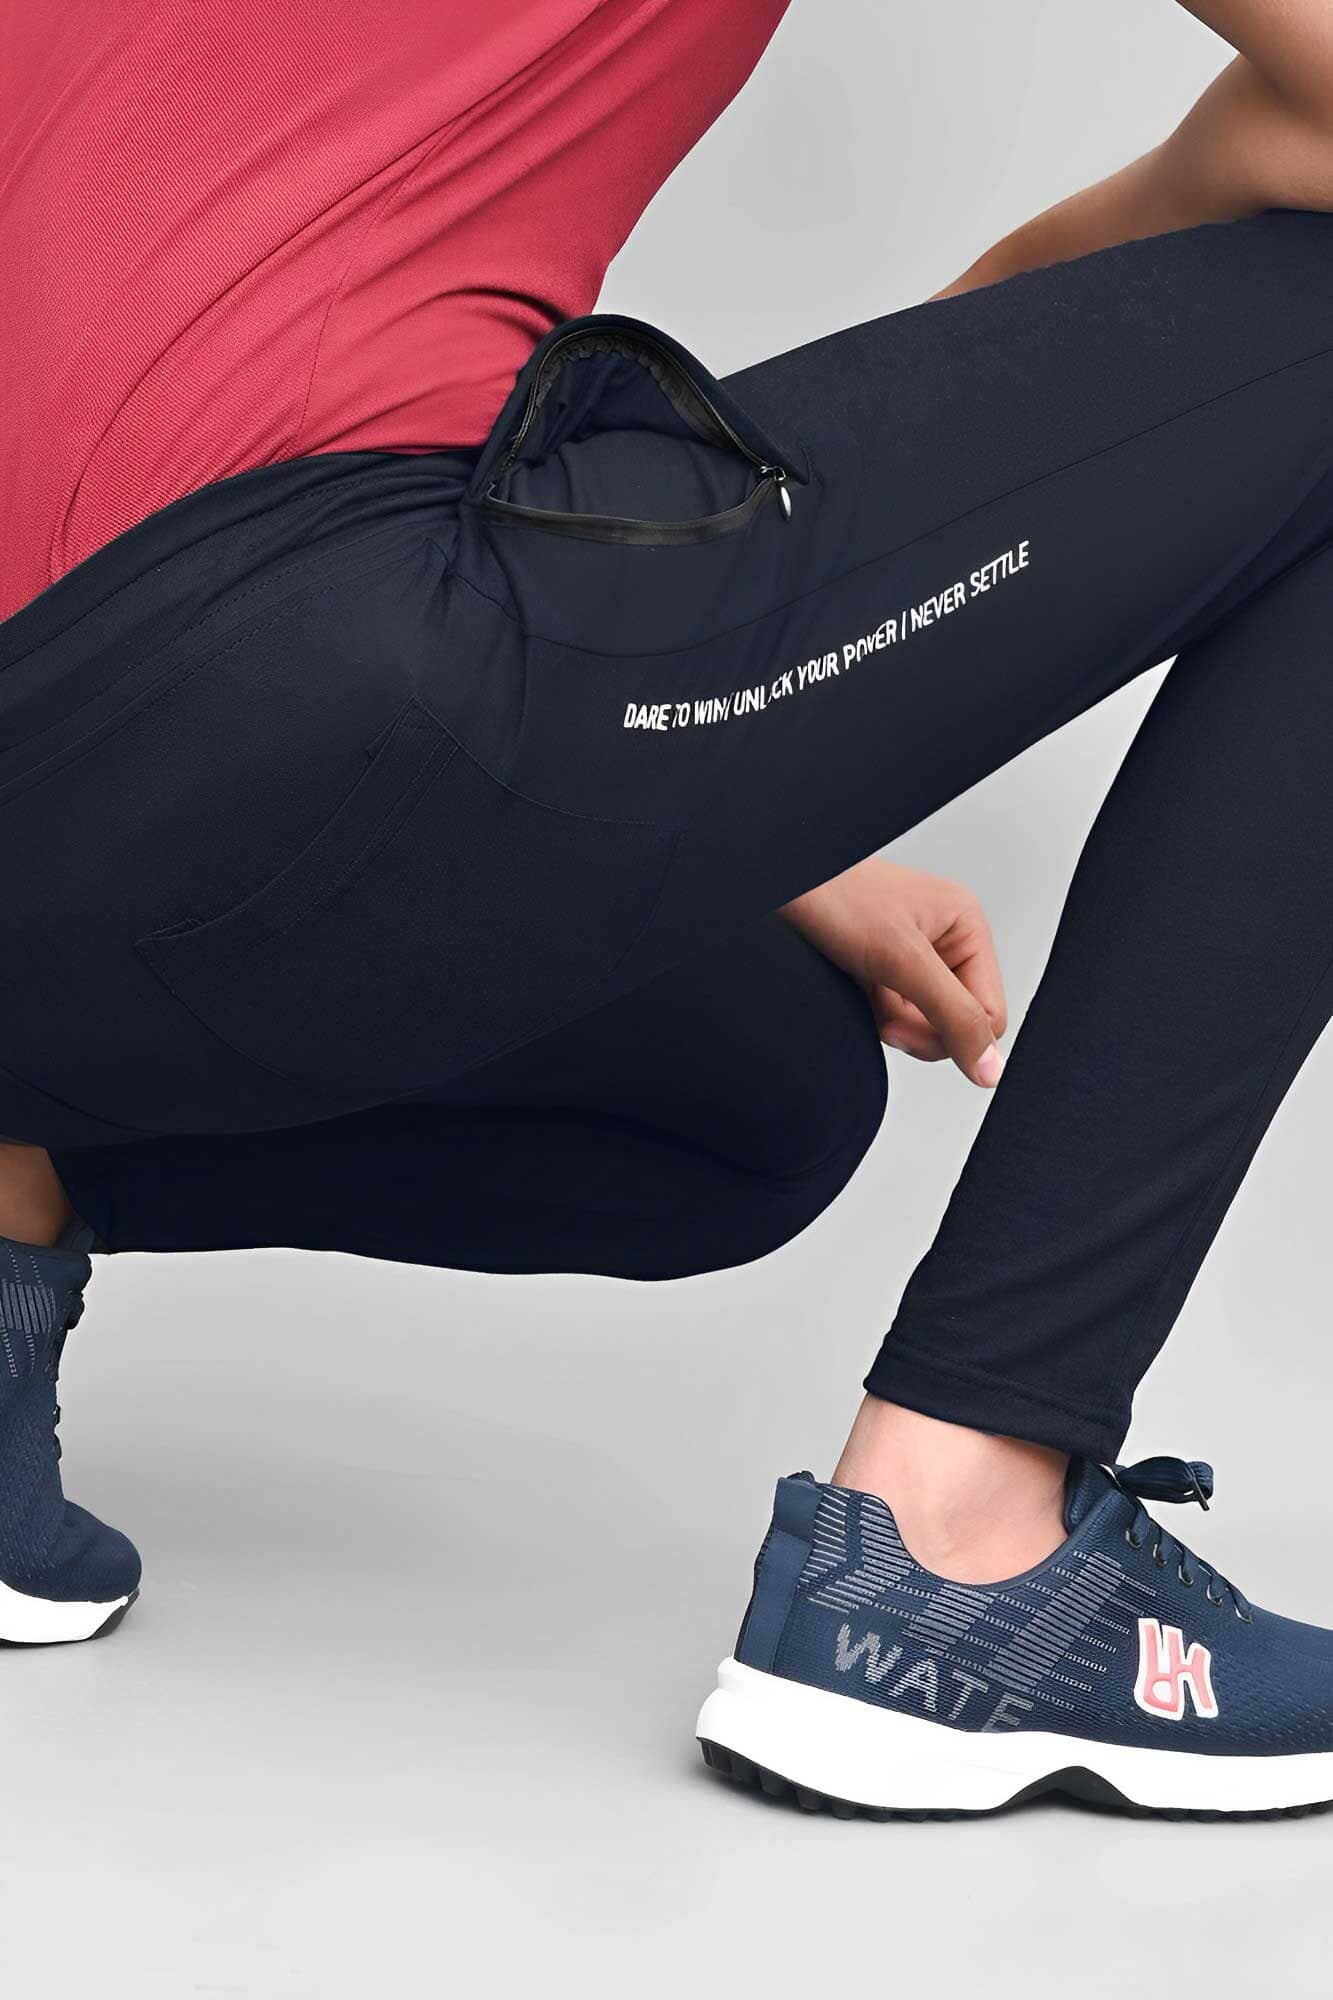 Polo Republica Men's Essentials Slim-Fit Joggers Men's Trousers Polo Republica 